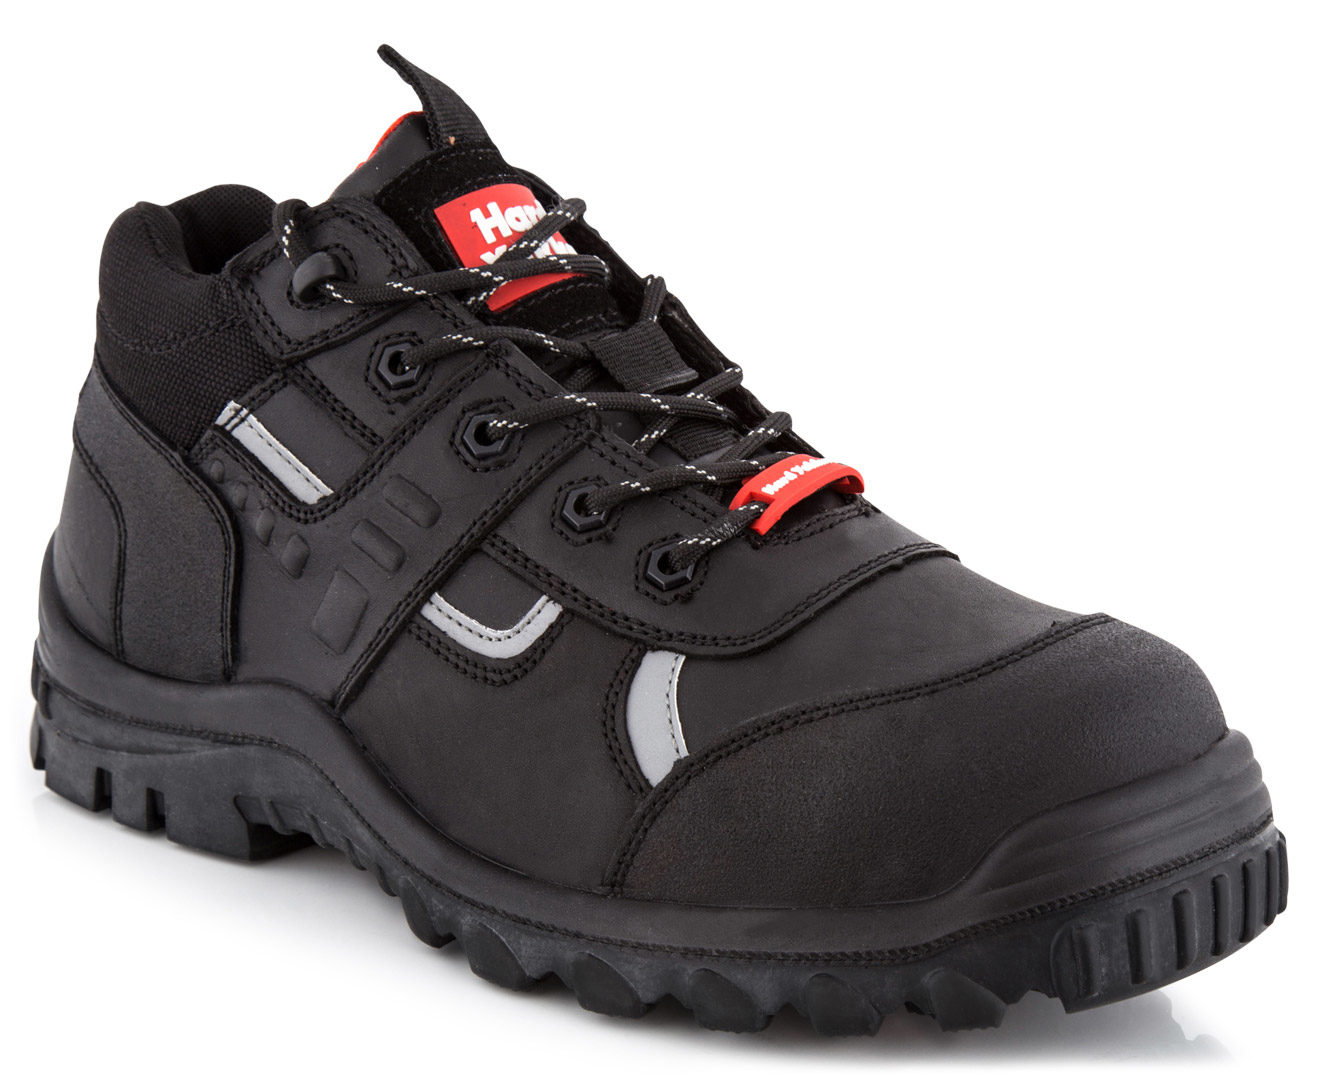 Hard Yakka Men's Platinum Safety Shoe - Black